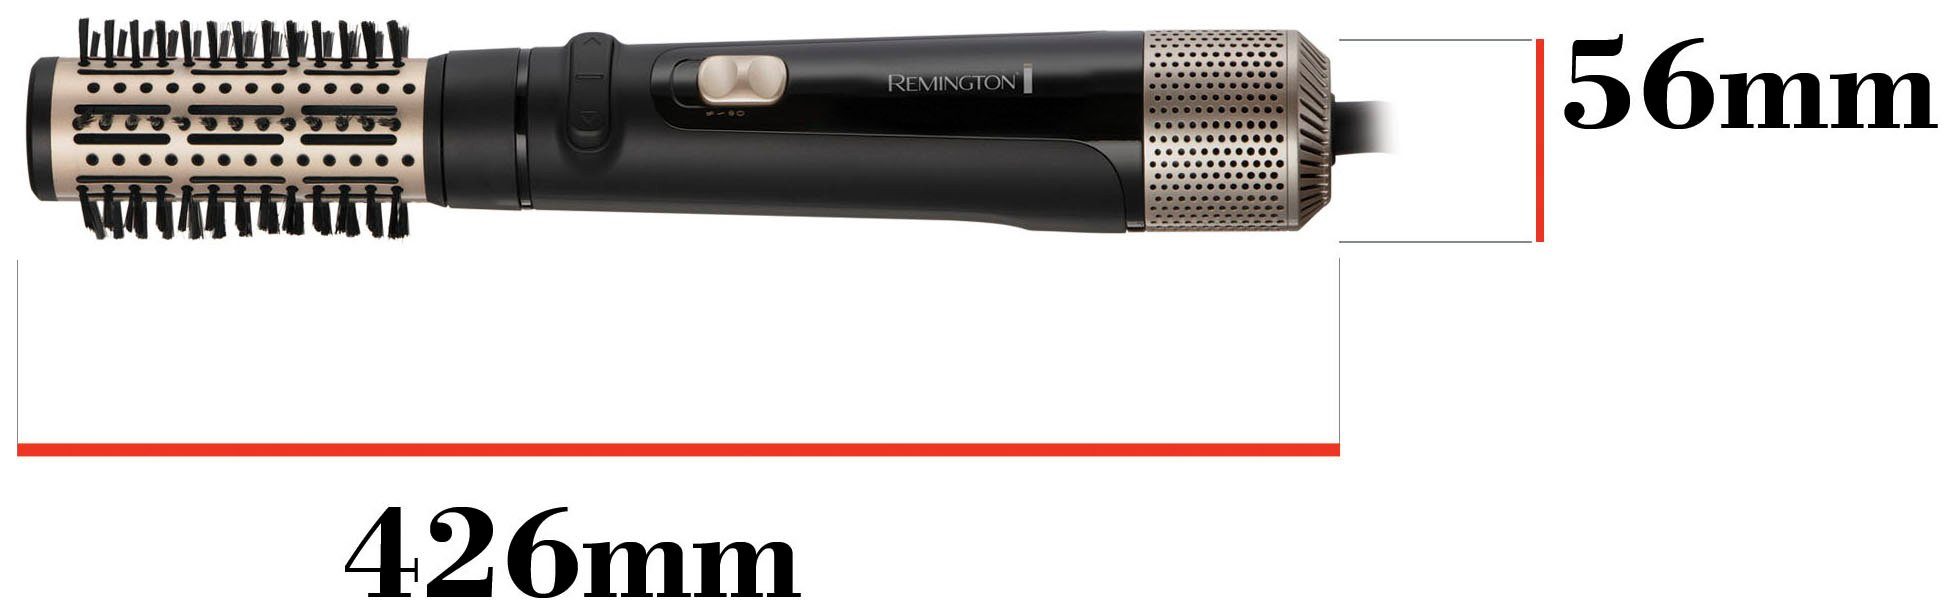 Remington Warmluftbürste Blow Dry Haarlängen Watt (rotierender AS7580, & Airstyler/Rund-& alle Style 1.000 Lockenbürste)